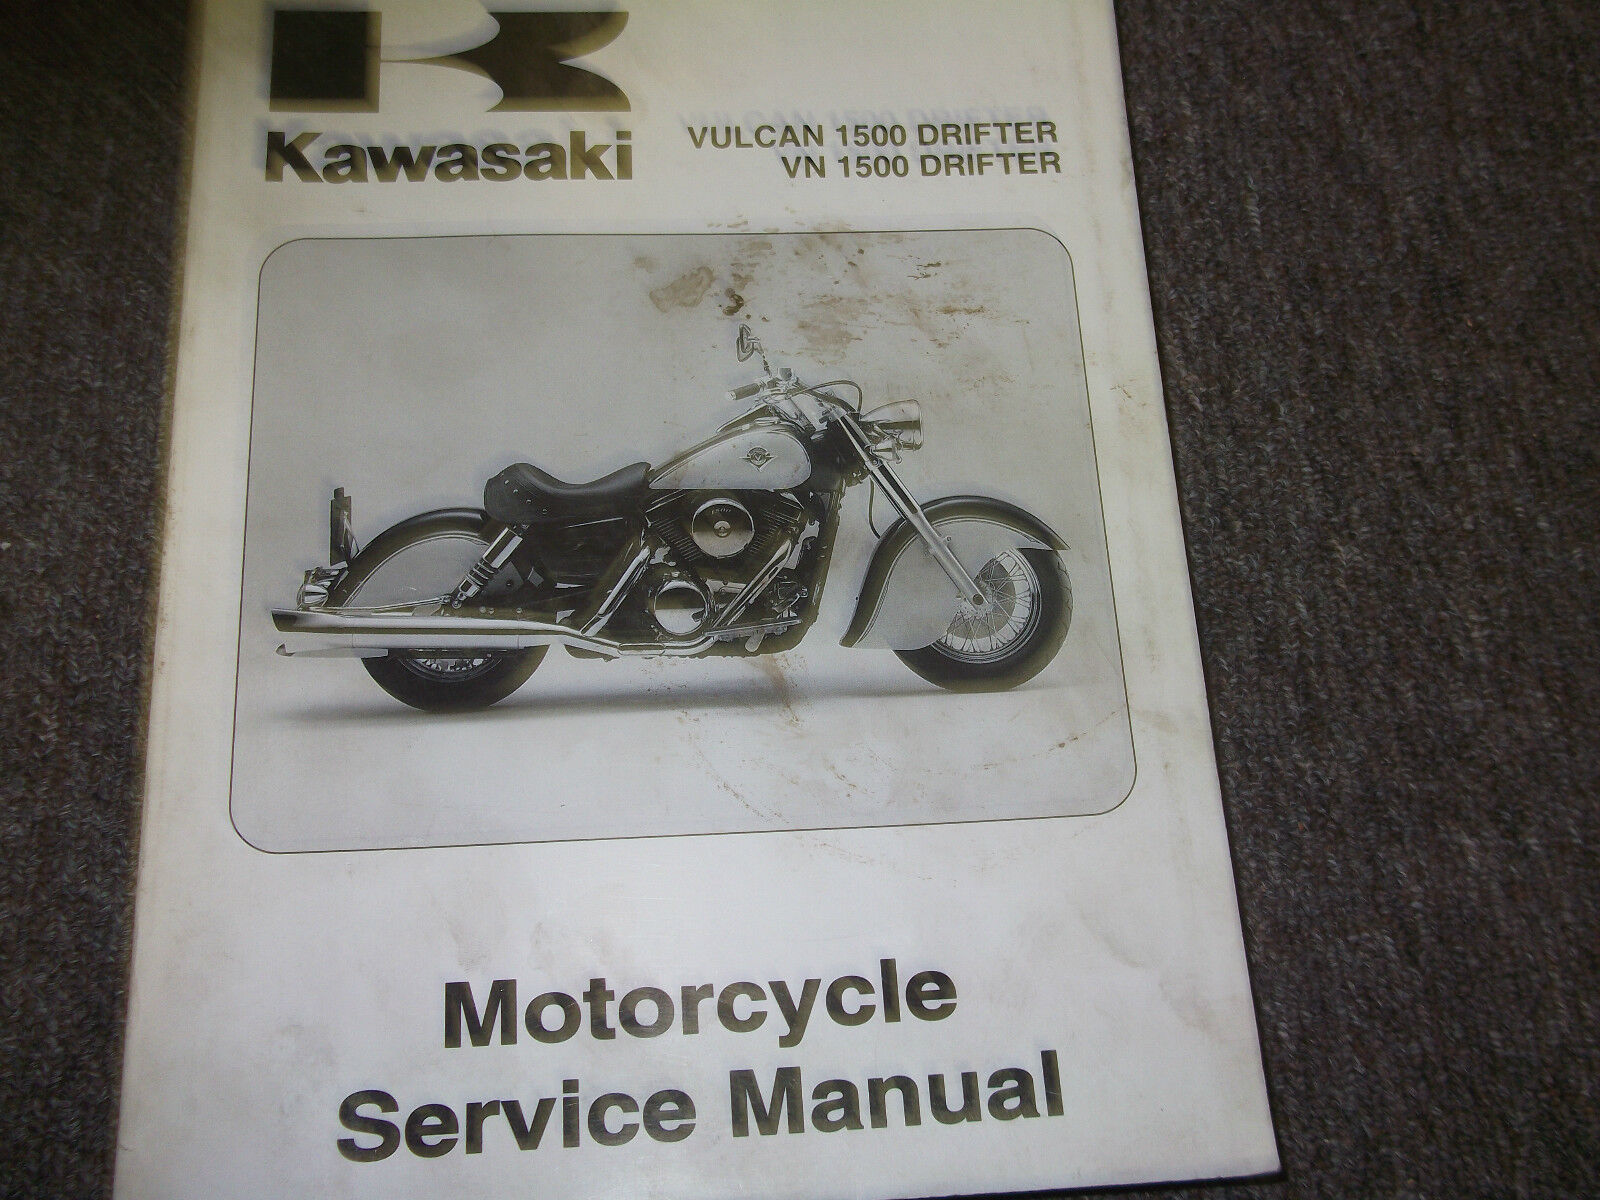 2002 Kawasaki VULCAN 1500 DRIFTER VN1500 Service Repair Shop Manual OEM